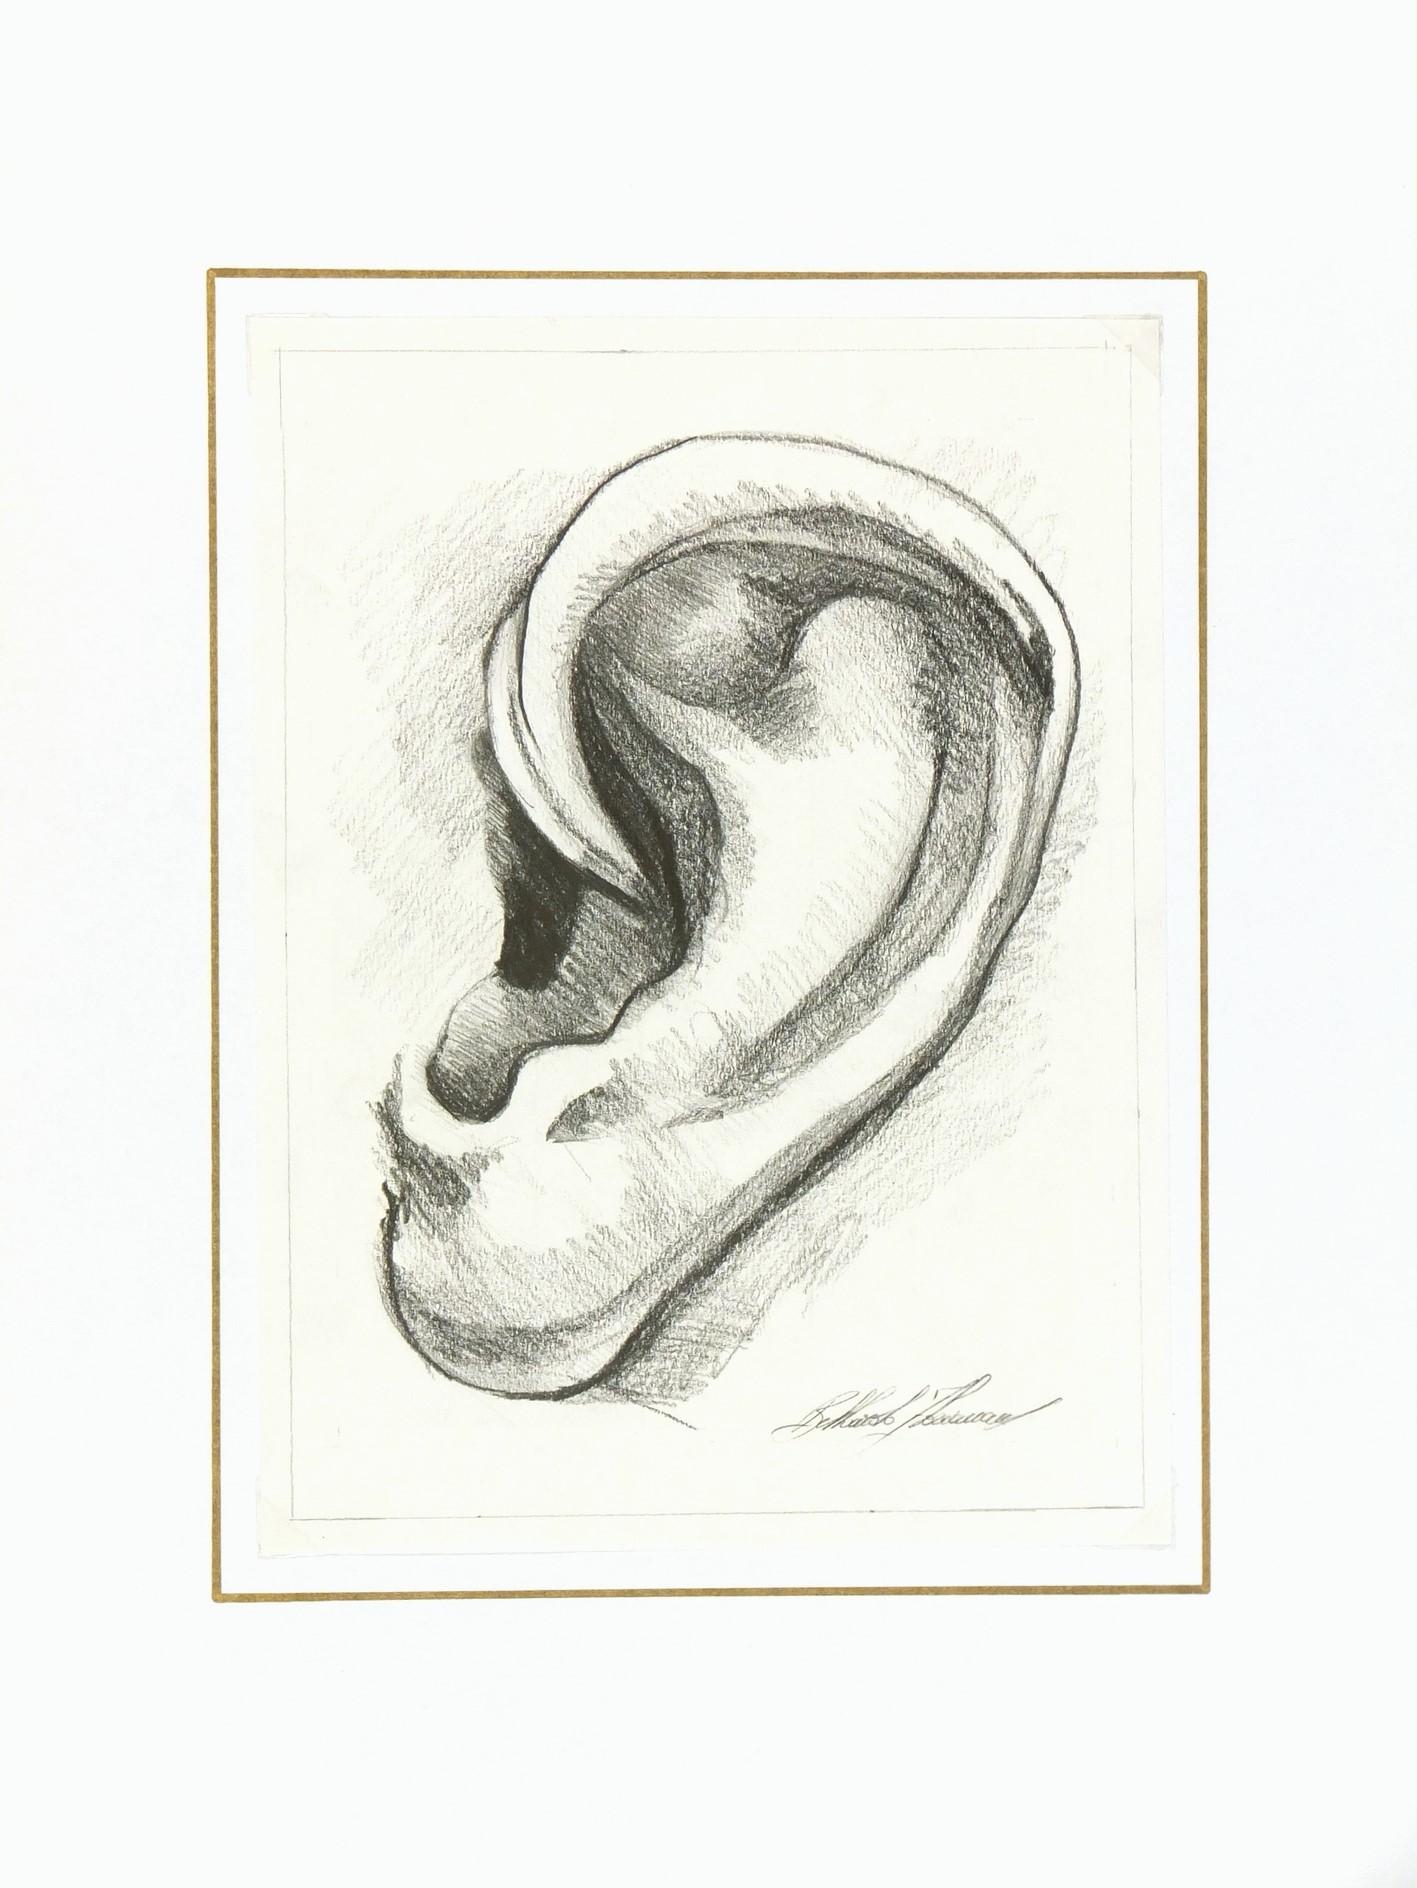 Wunderschön detaillierte Bleistiftzeichnung eines Ohrs von der toskanischen Künstlerin Floriana Belluardo. Signiert unten rechts. 

Originalkunstwerk auf Papier auf einem weißen Passepartout mit Goldrand. Die Matte passt in einen Rahmen mit